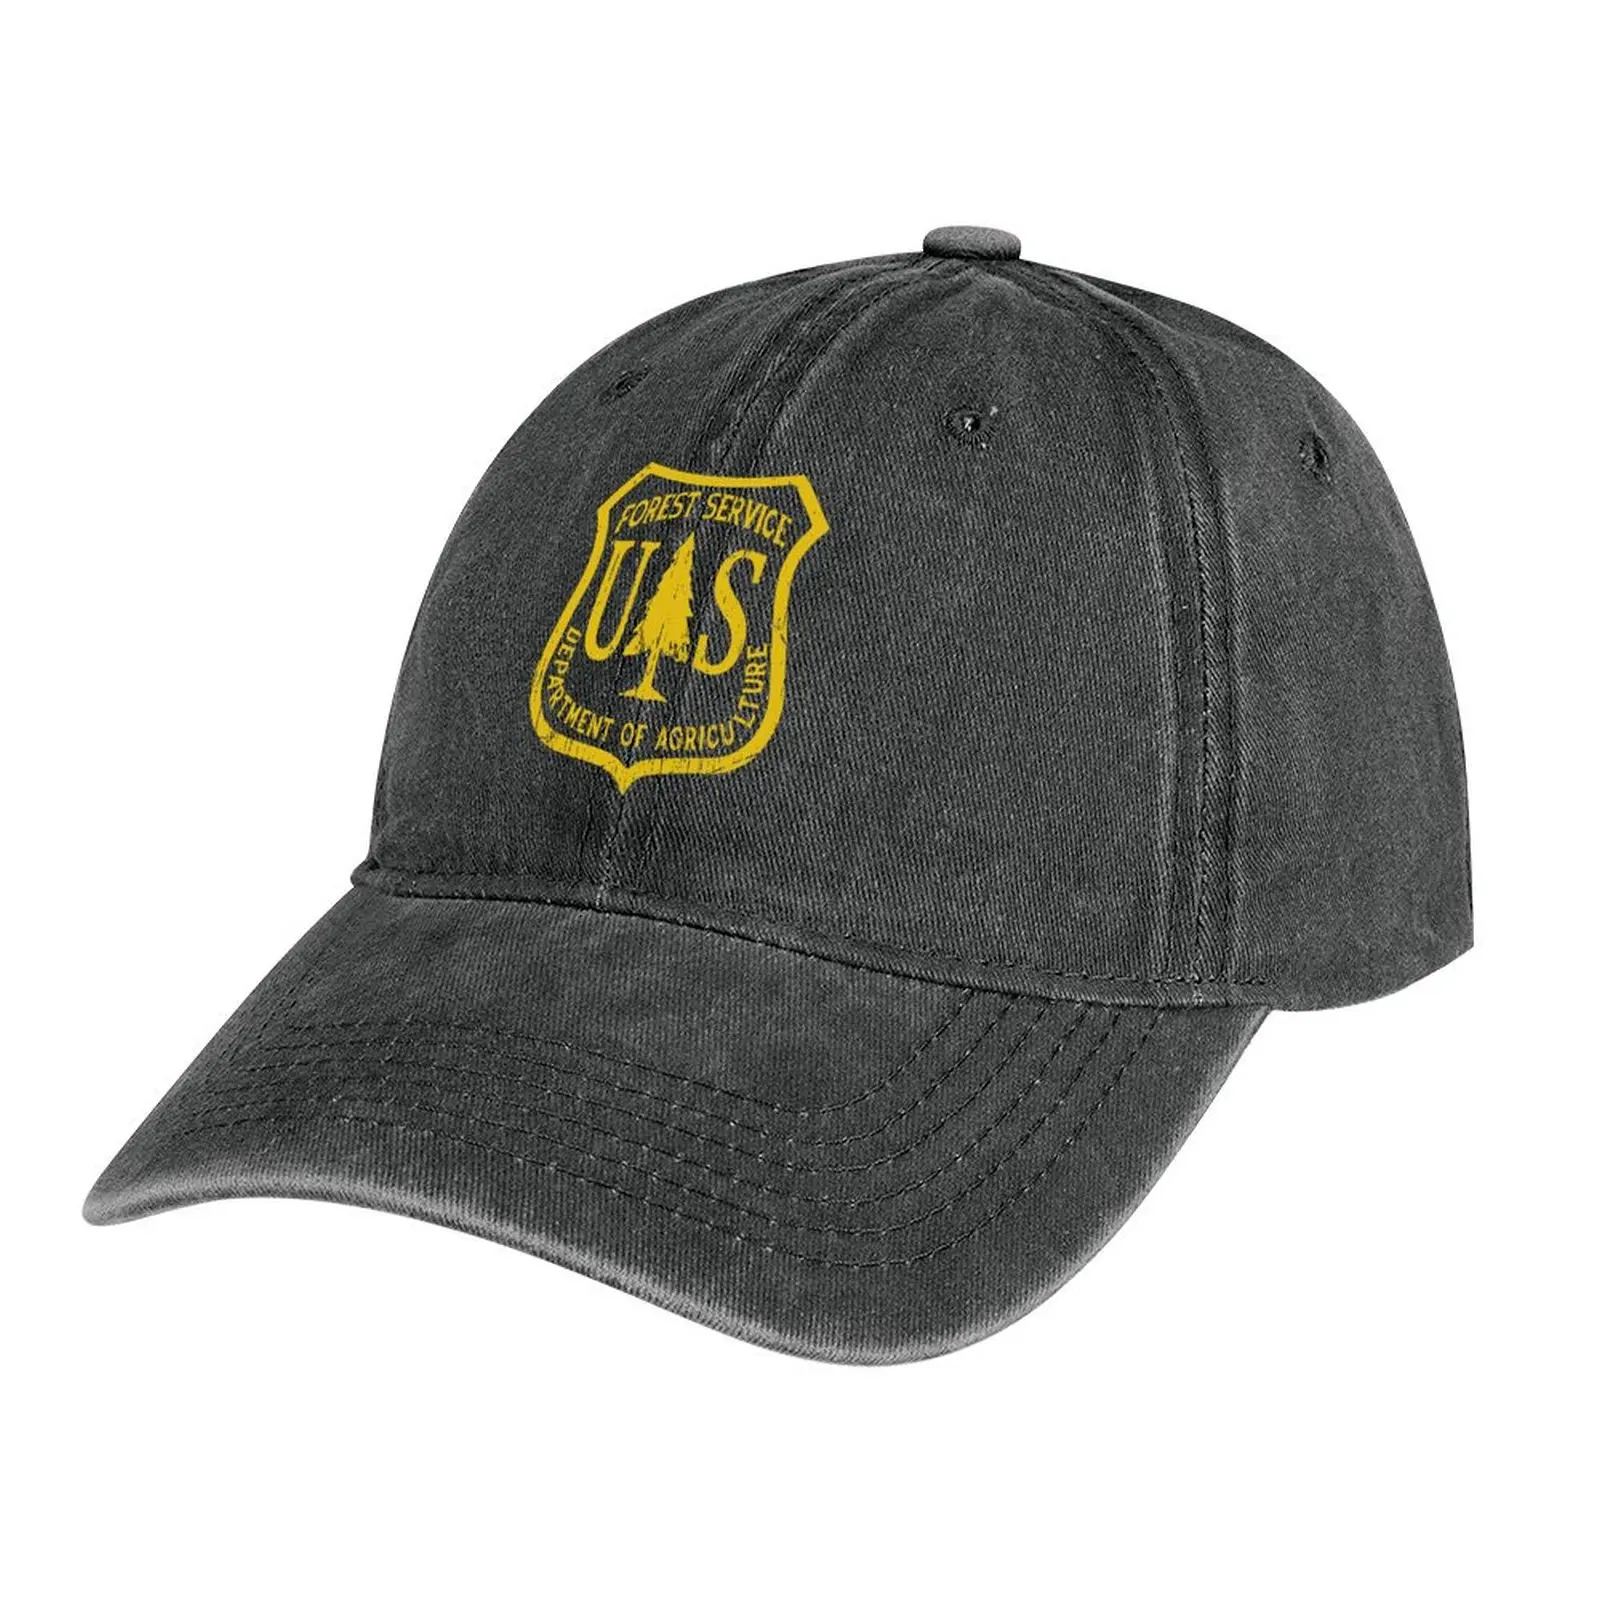 

Forest Service Vintage Emblem Cowboy Hat Golf Cap Icon Dropshipping Trucker Cap Hats For Men Women's